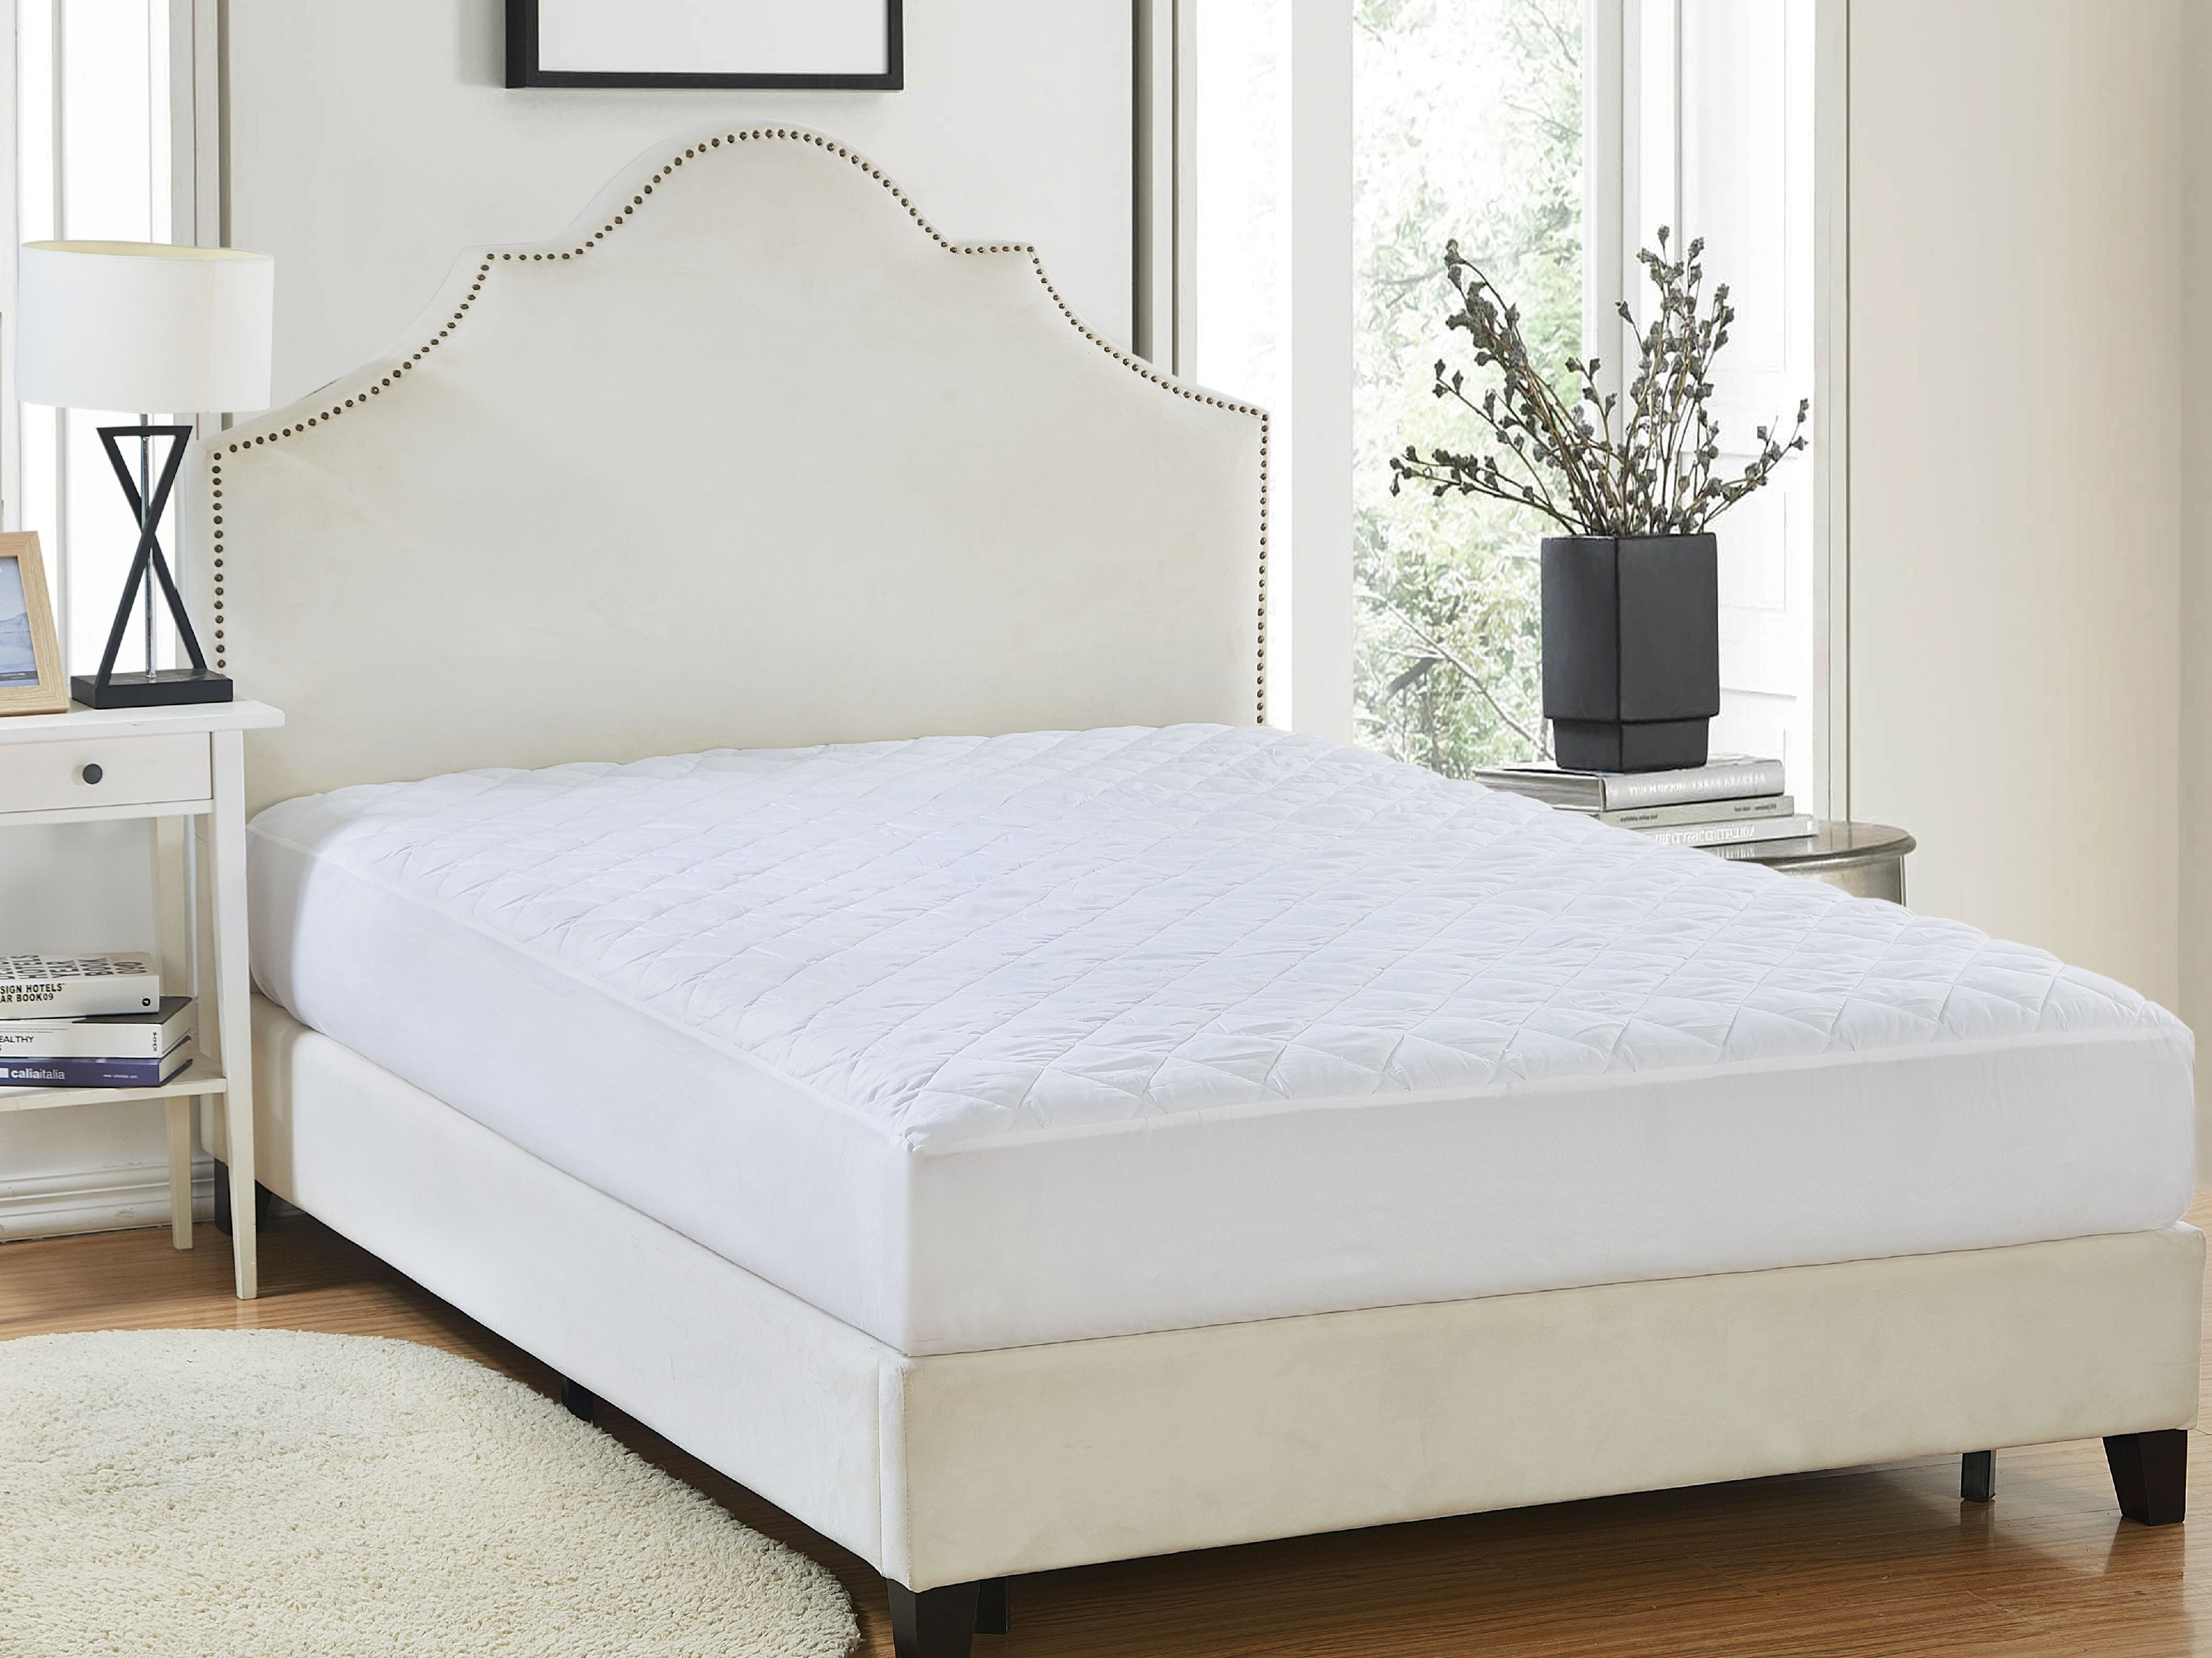 walmart mattress pad covers